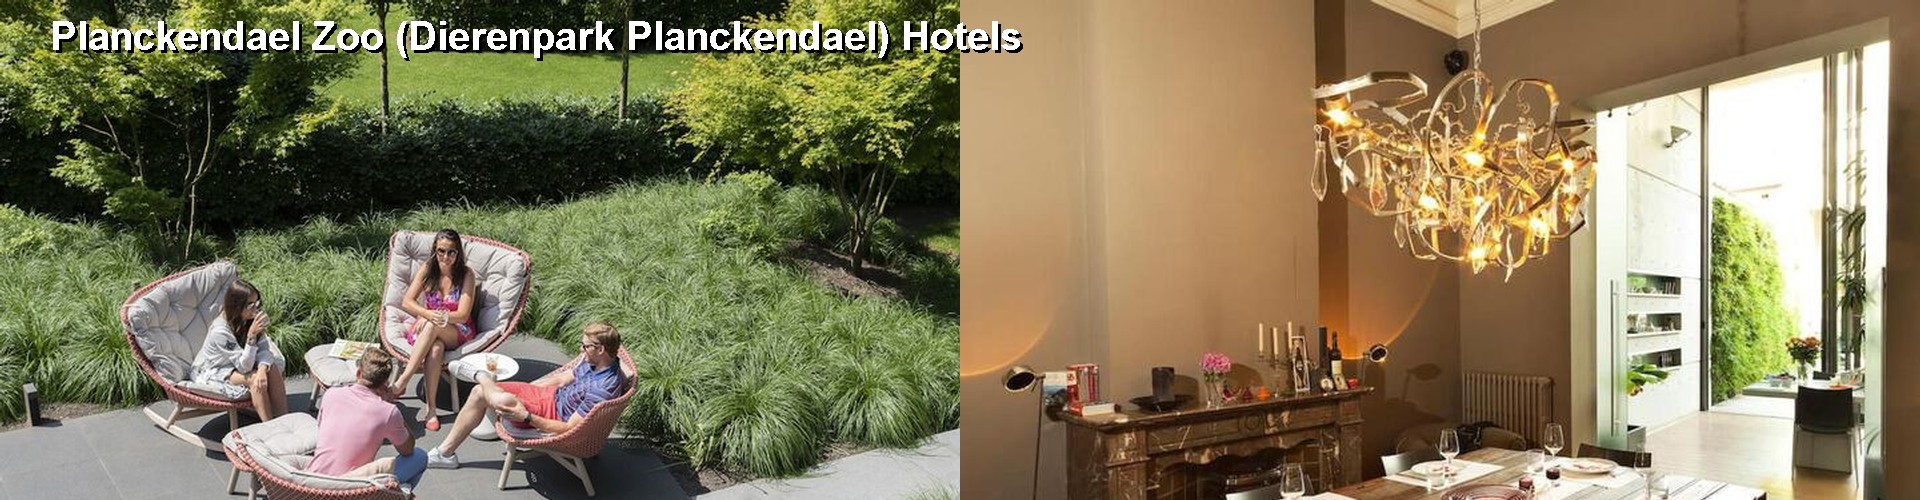 5 Best Hotels near Planckendael Zoo (Dierenpark Planckendael)